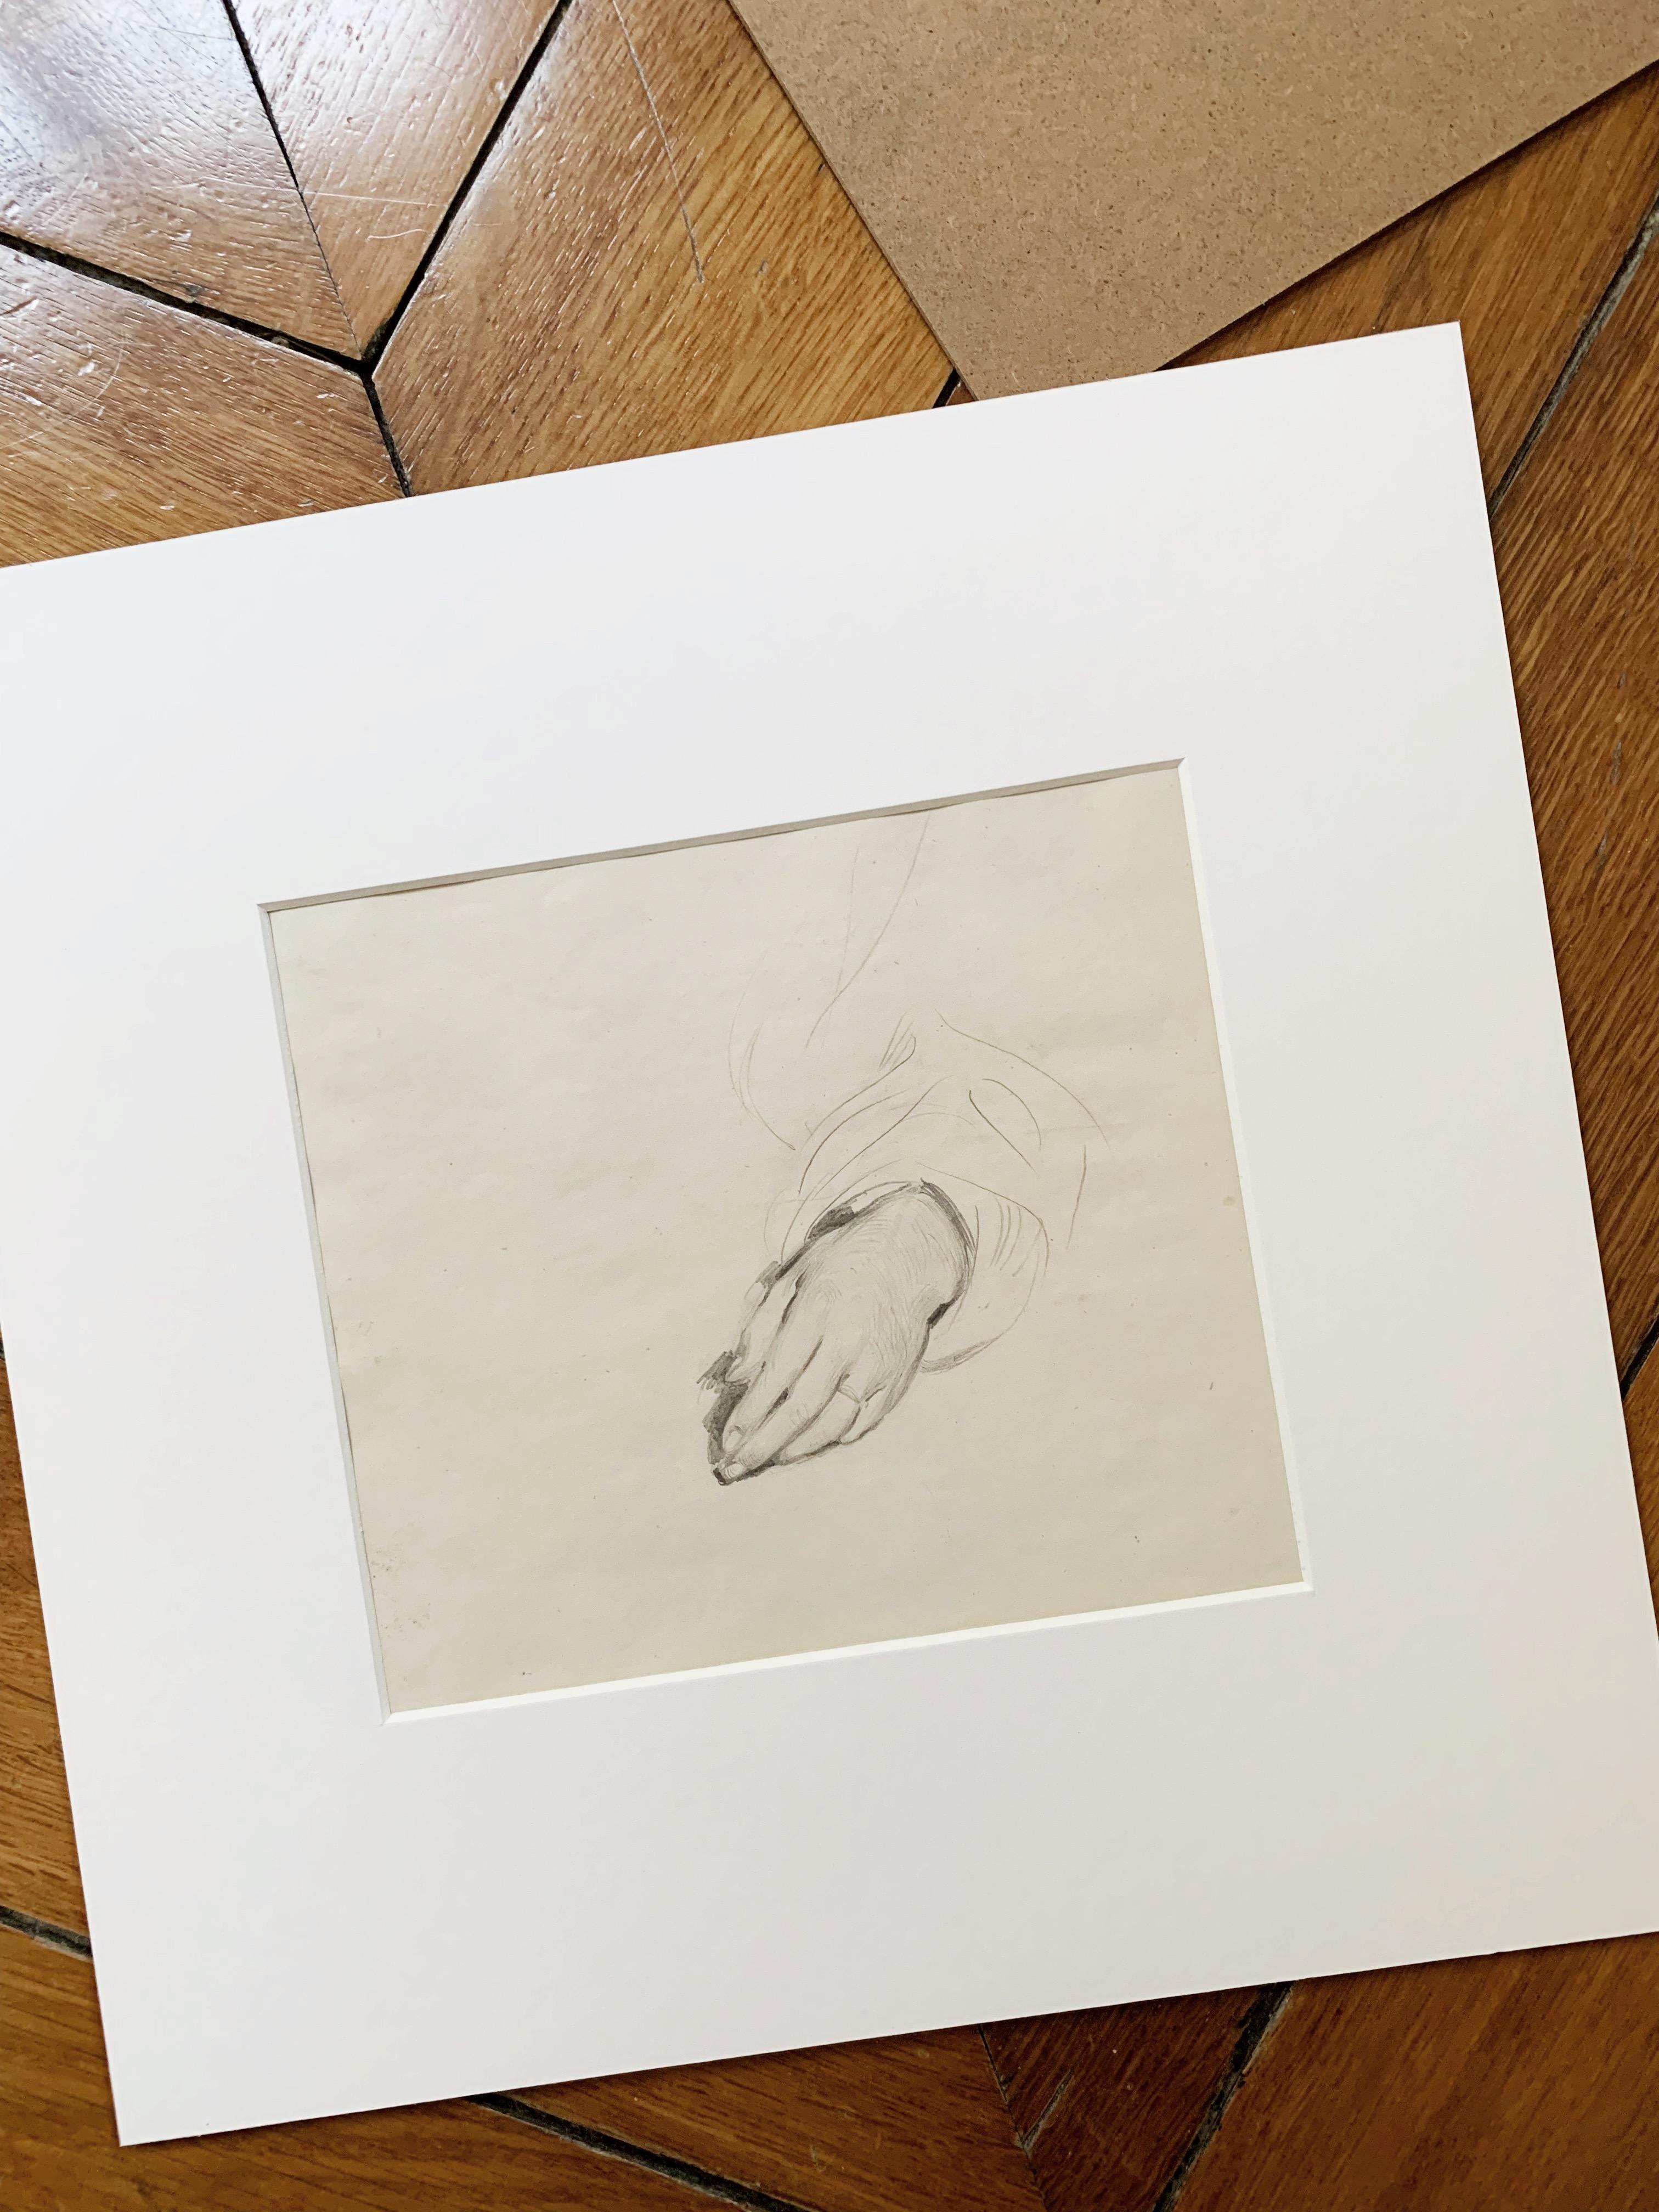 Alfred DEHODENCQ (1822-1982)
Studie einer Hand; vorbereitend für das Gemälde Jüdische Braut in Marokko, 1867
Bleistift auf Papier
Abmessungen des Werks: 15,5 x 17,5 cm
Rahmengröße : 30 x 30 cm


Alfred Dehodencq, ein orientalischer Maler, begann